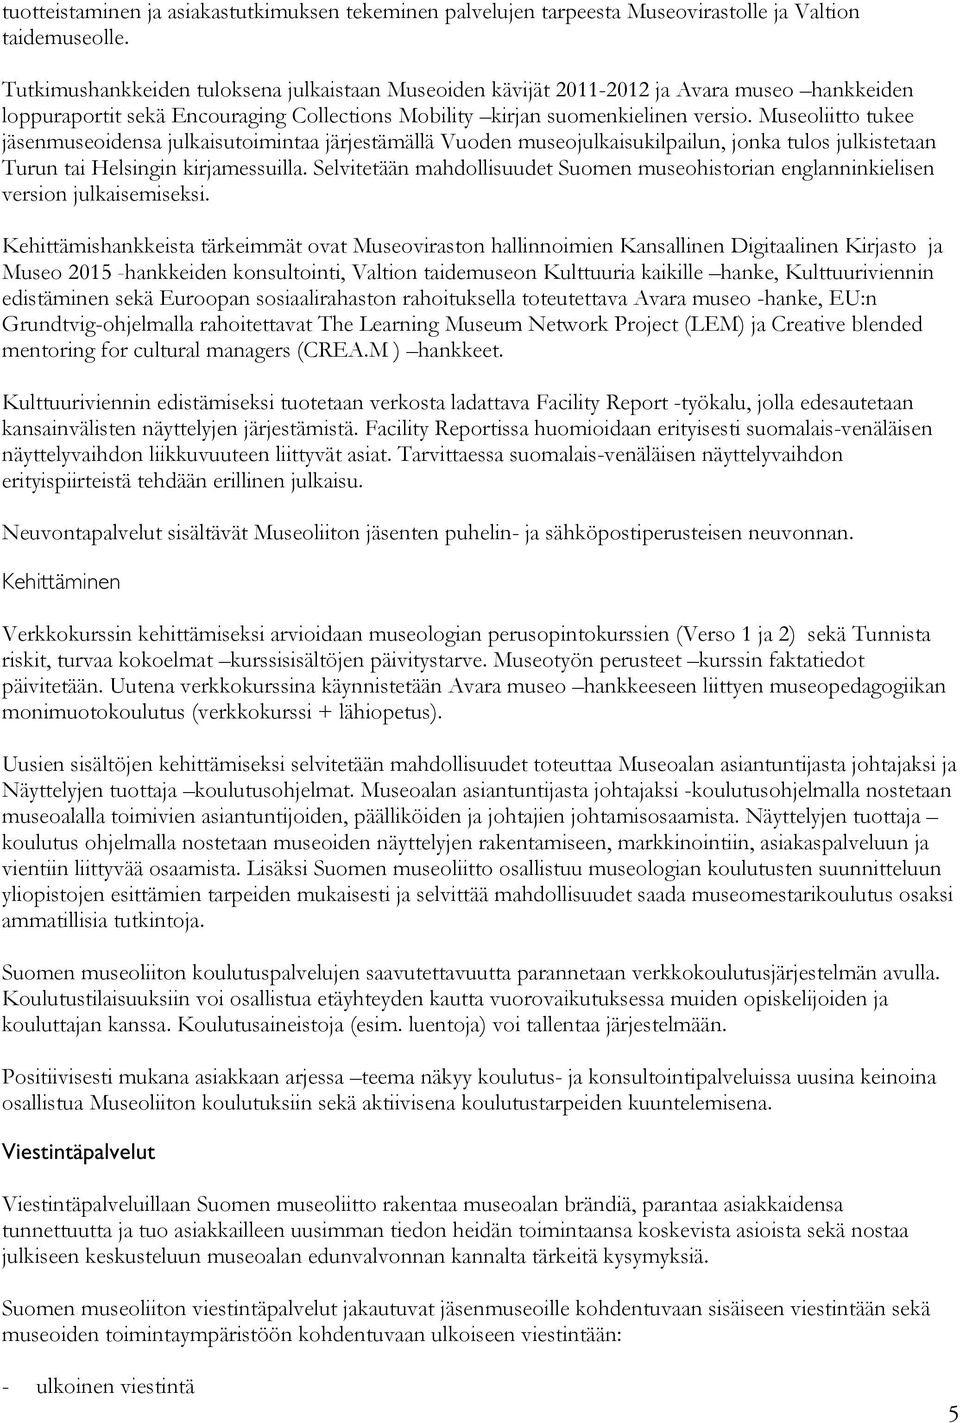 Museoliitto tukee jäsenmuseoidensa julkaisutoimintaa järjestämällä Vuoden museojulkaisukilpailun, jonka tulos julkistetaan Turun tai Helsingin kirjamessuilla.